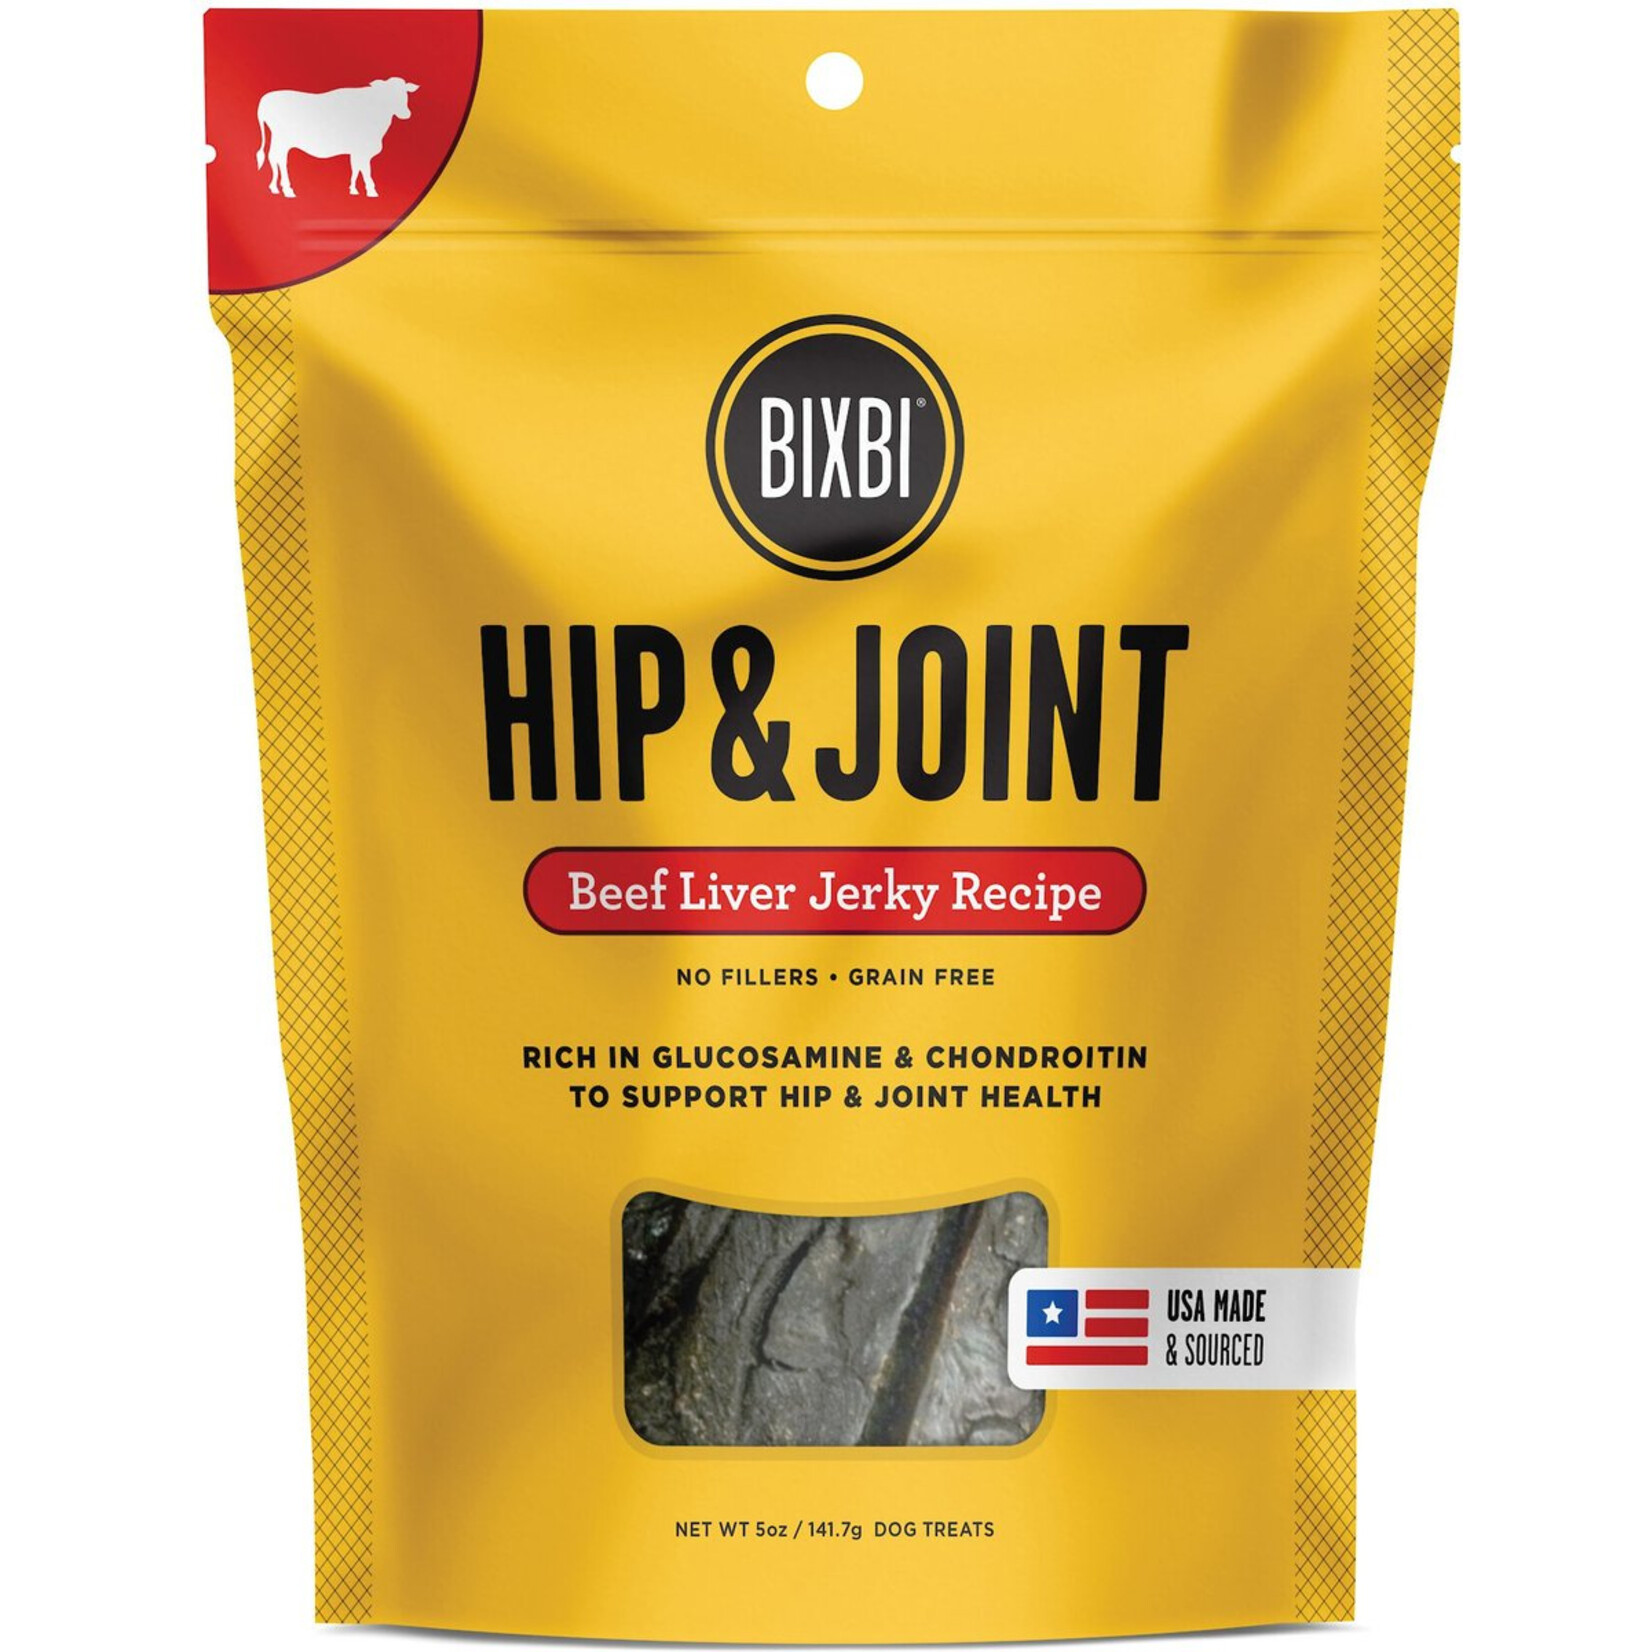 Bixbi Bixbi Hip & Joint - Beef Liver Jerky Recipe